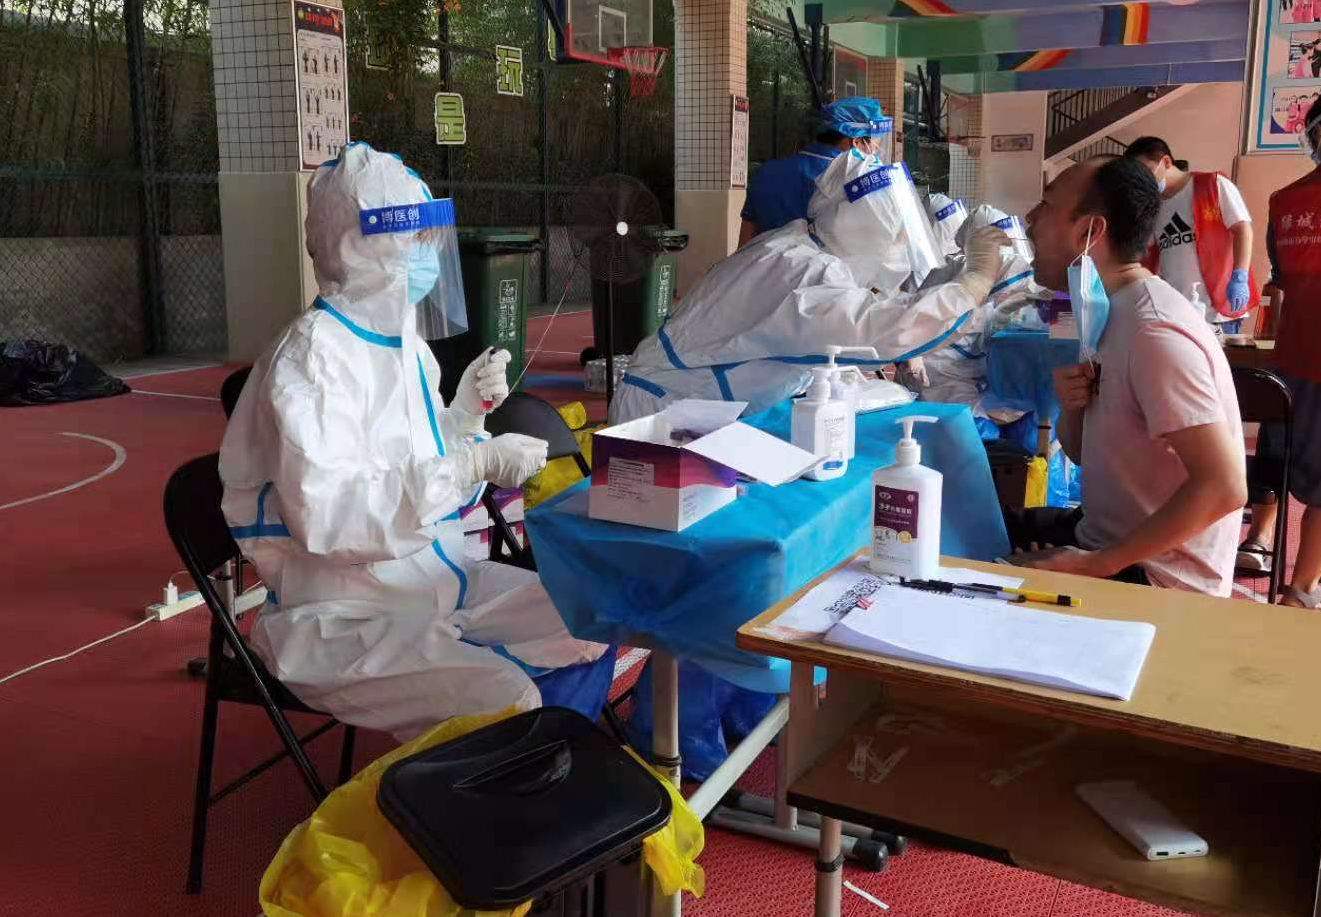 郑州全员核酸检测全面铺开 疾控专家提醒做好防护很关键